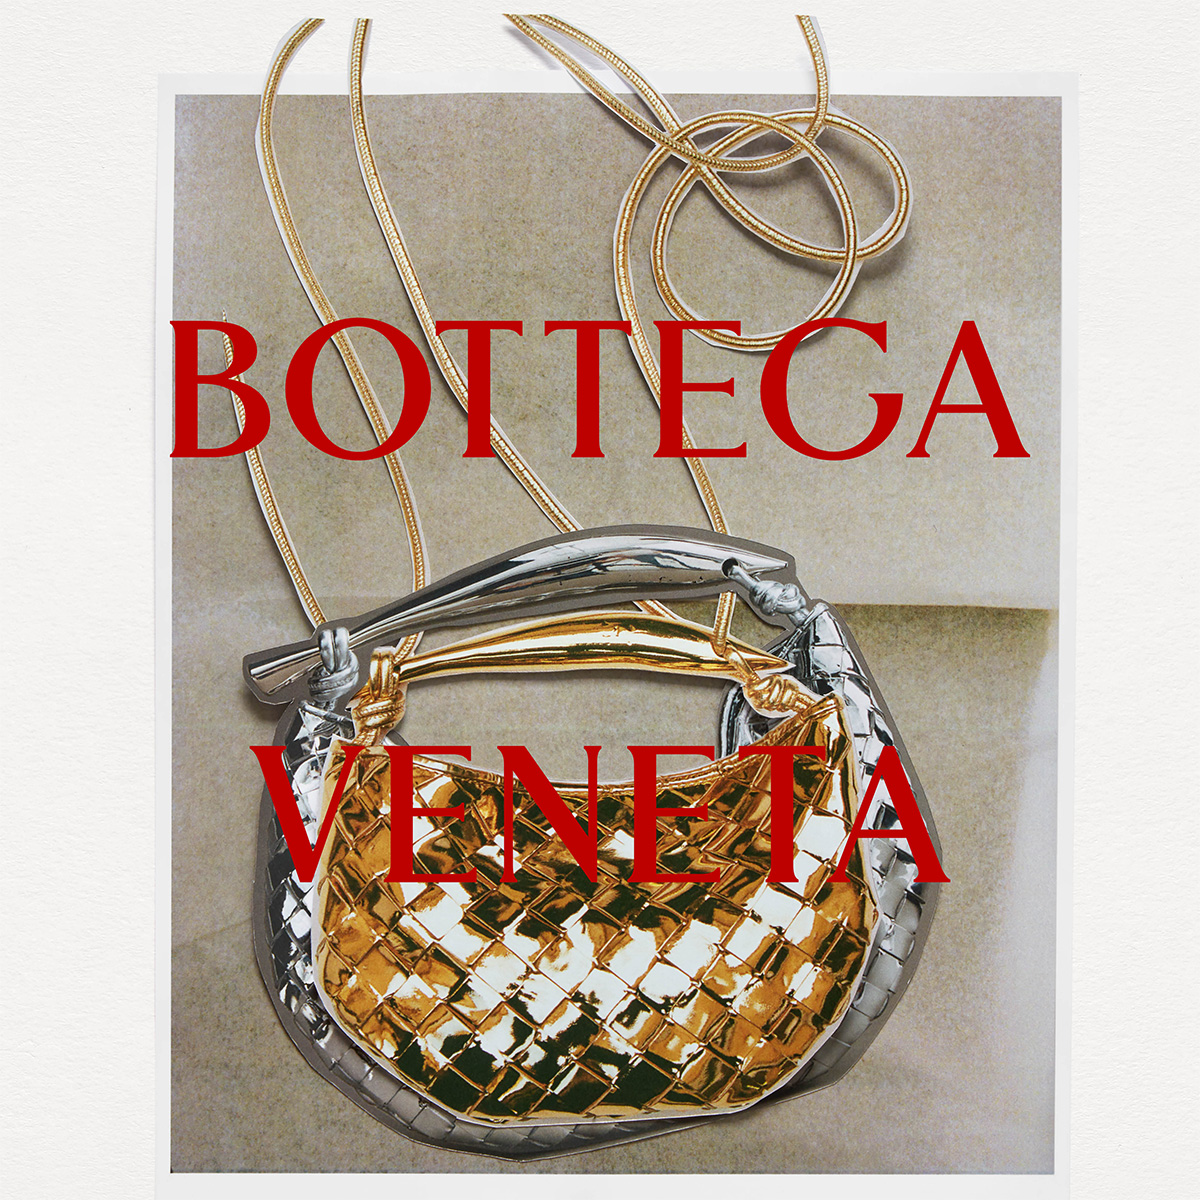 ボッテガ・ヴェネタの特別なギフトセレクションでリッチなクリスマスを